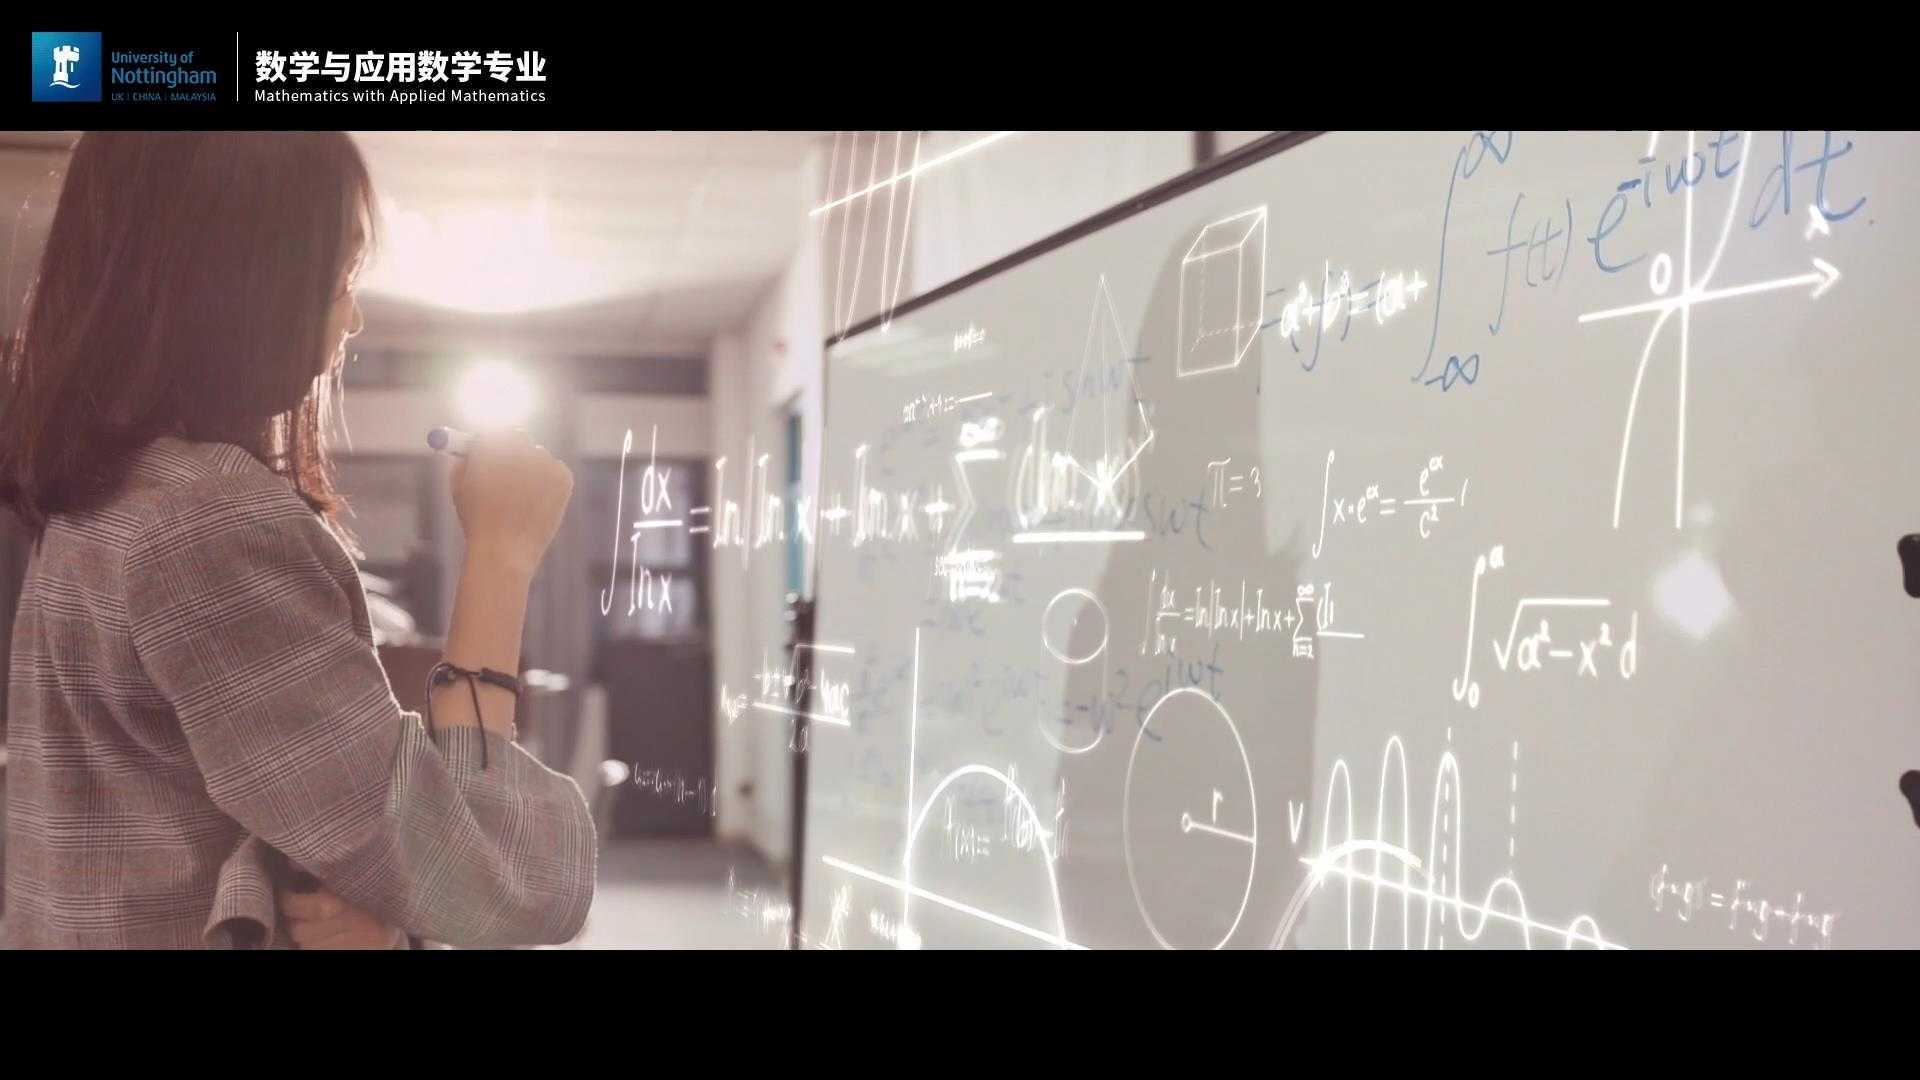 宁波诺丁汉大学 | 数学与应用数学专业2022年招生宣传片